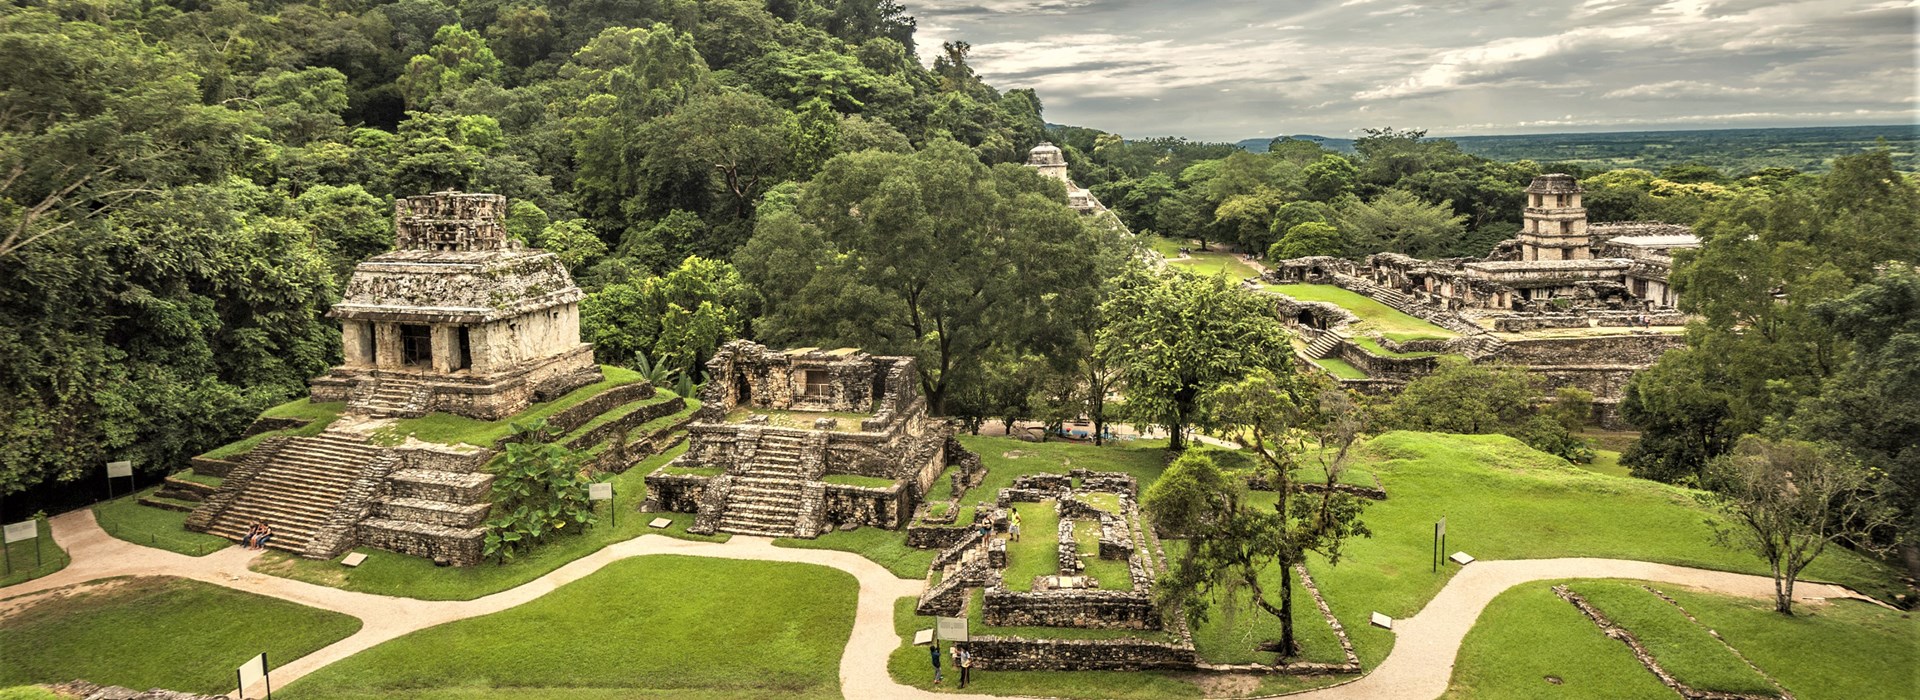 Visiter Palenque - Mexique